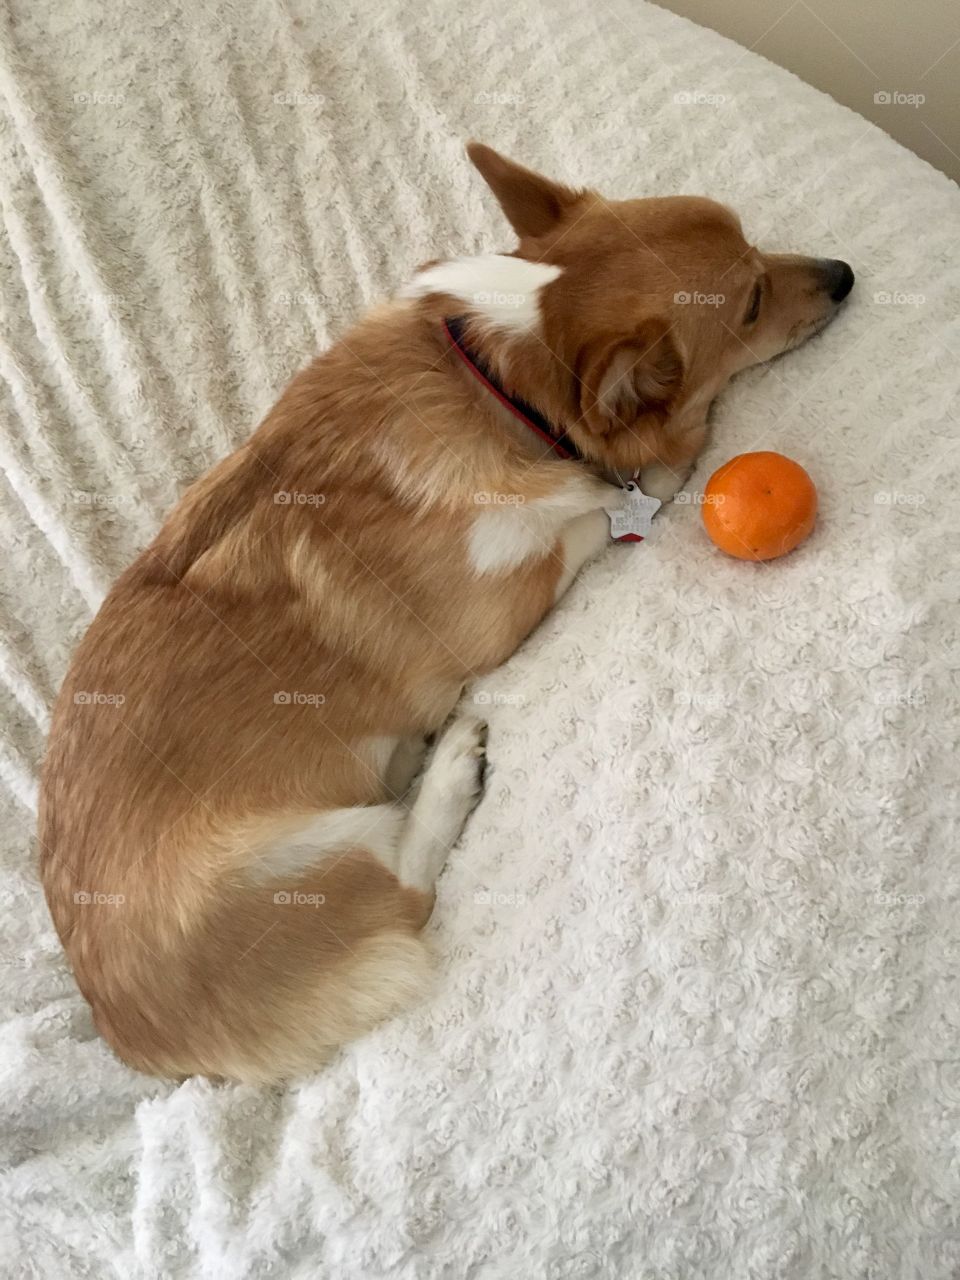 Corgi funny laying puppy dog with orange fruit lovesac